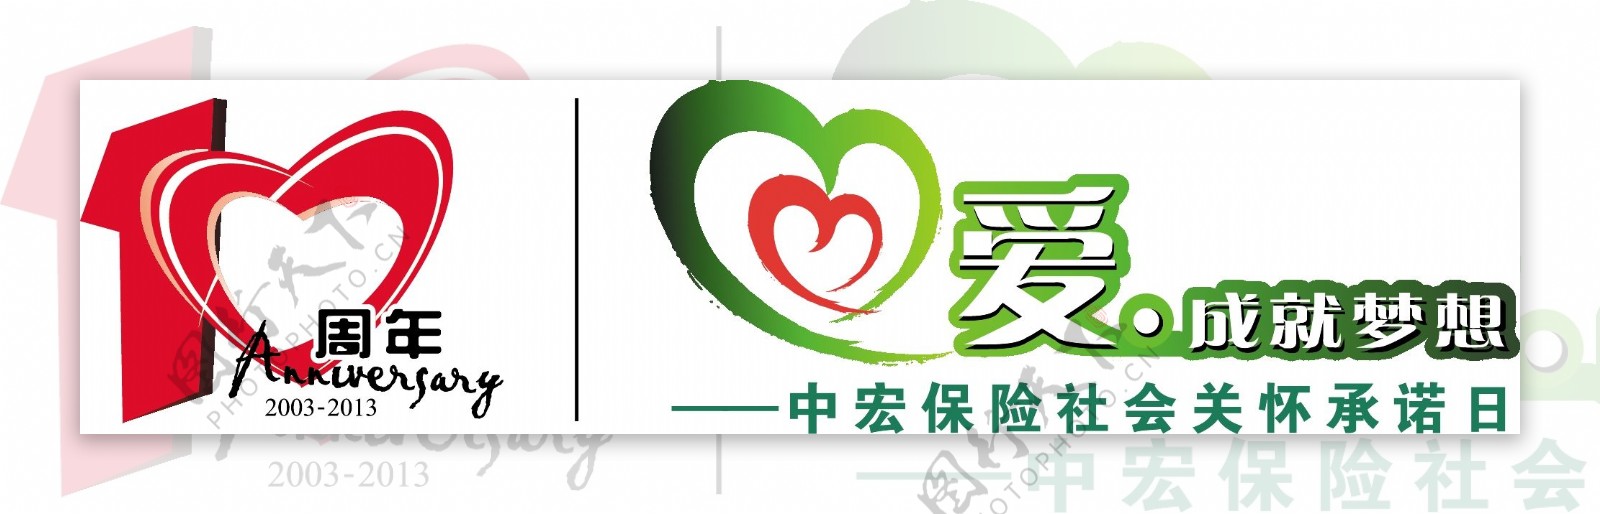 中宏保险关怀logo图片